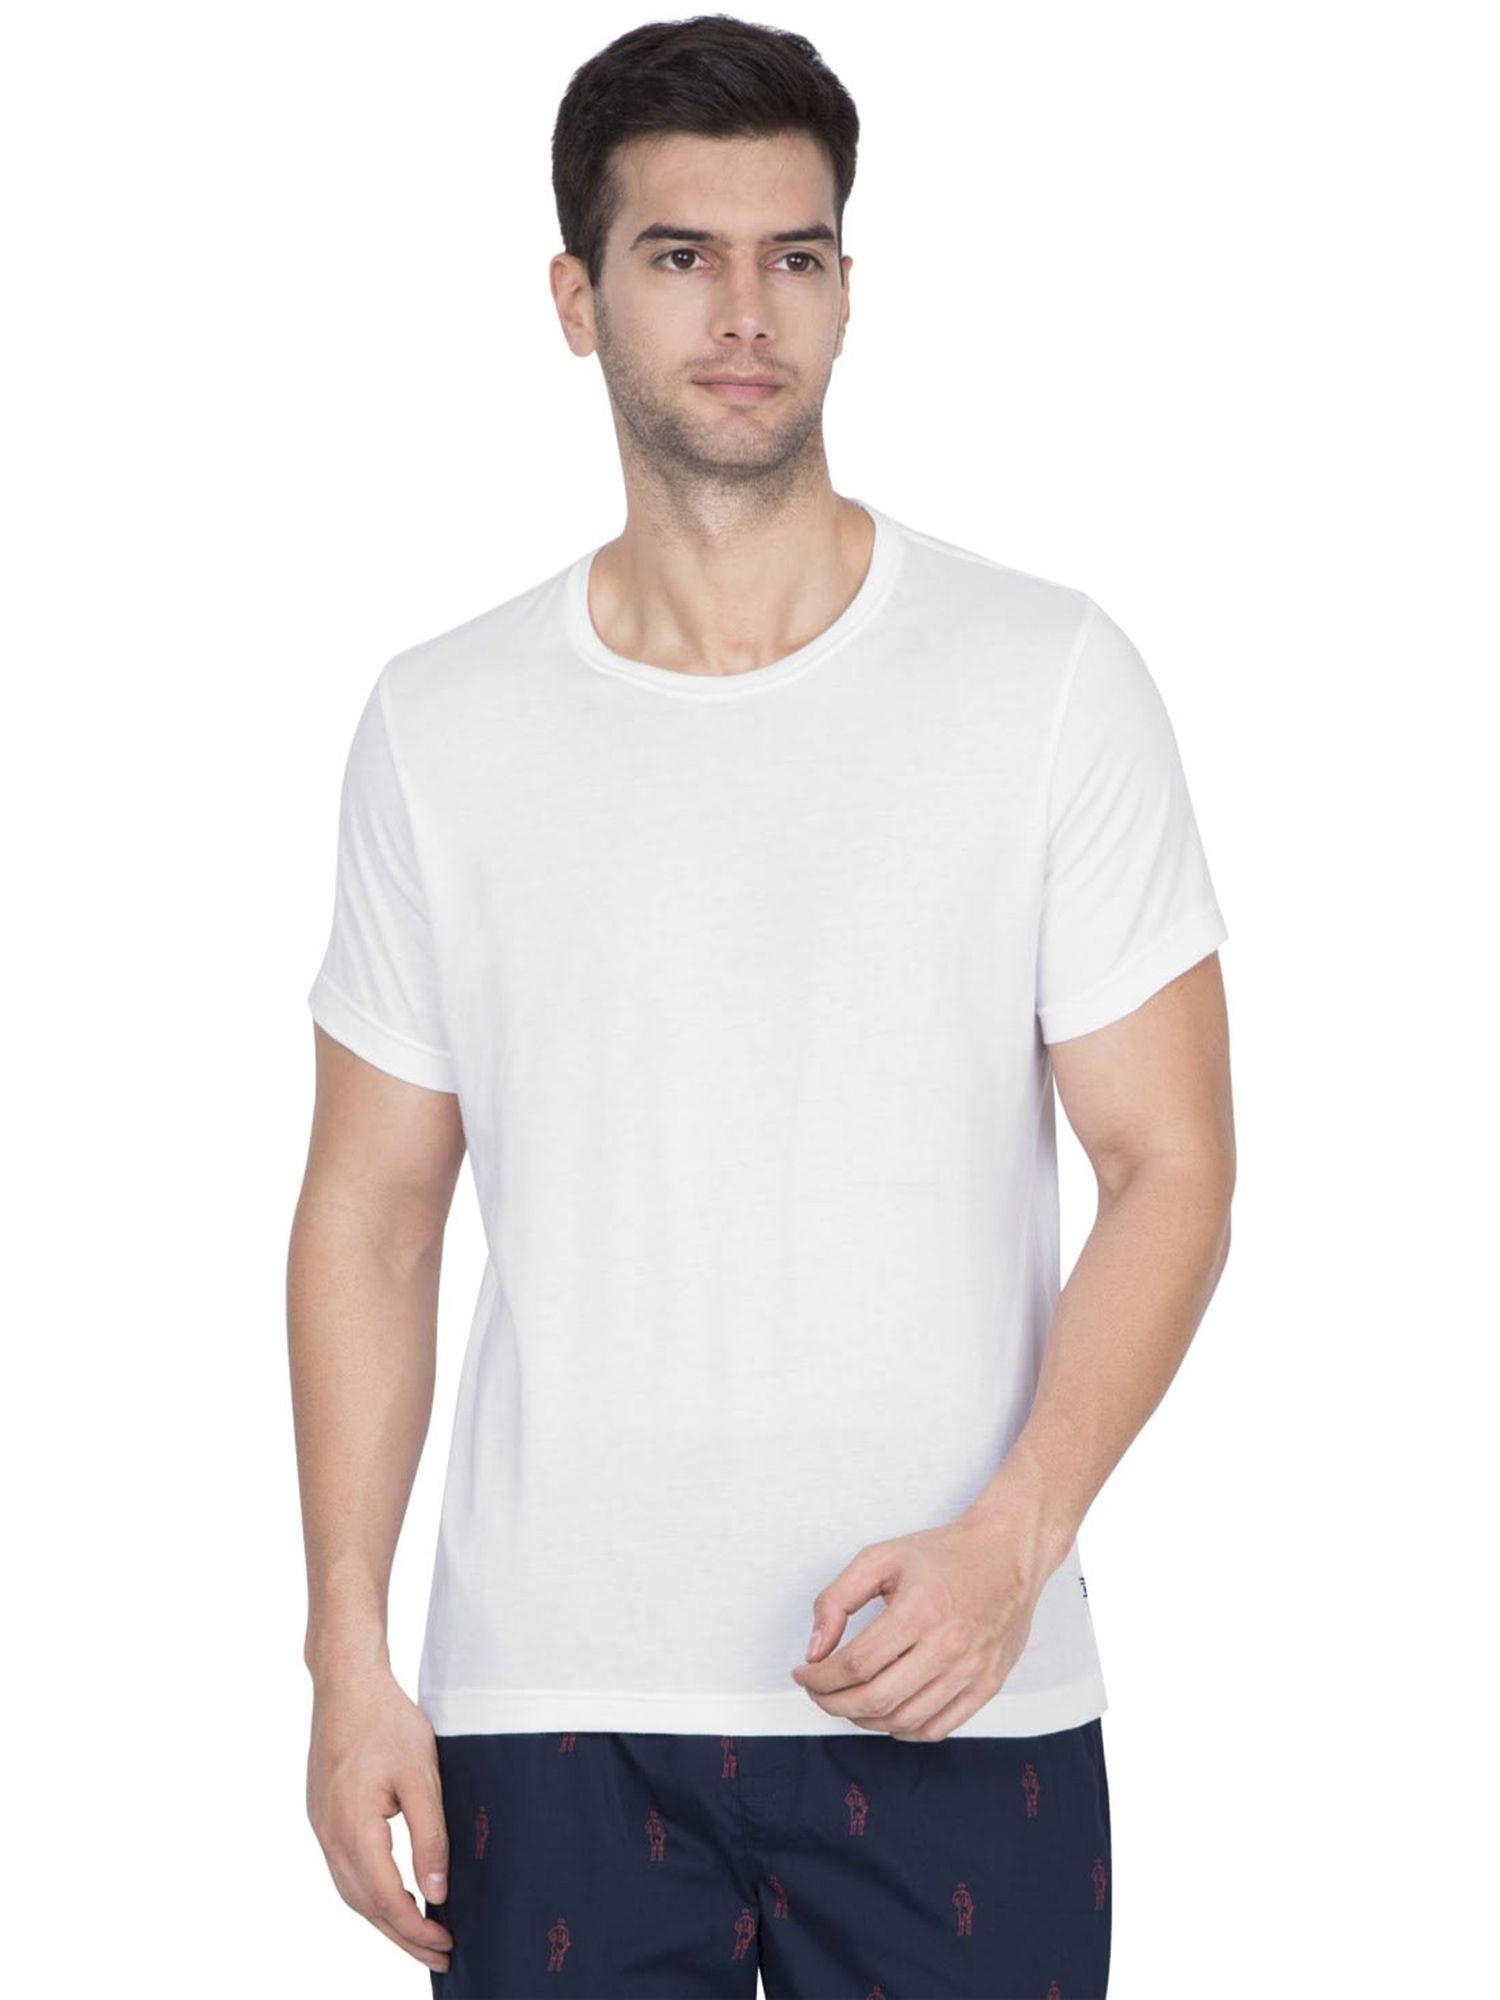 white-inner-t-shirt